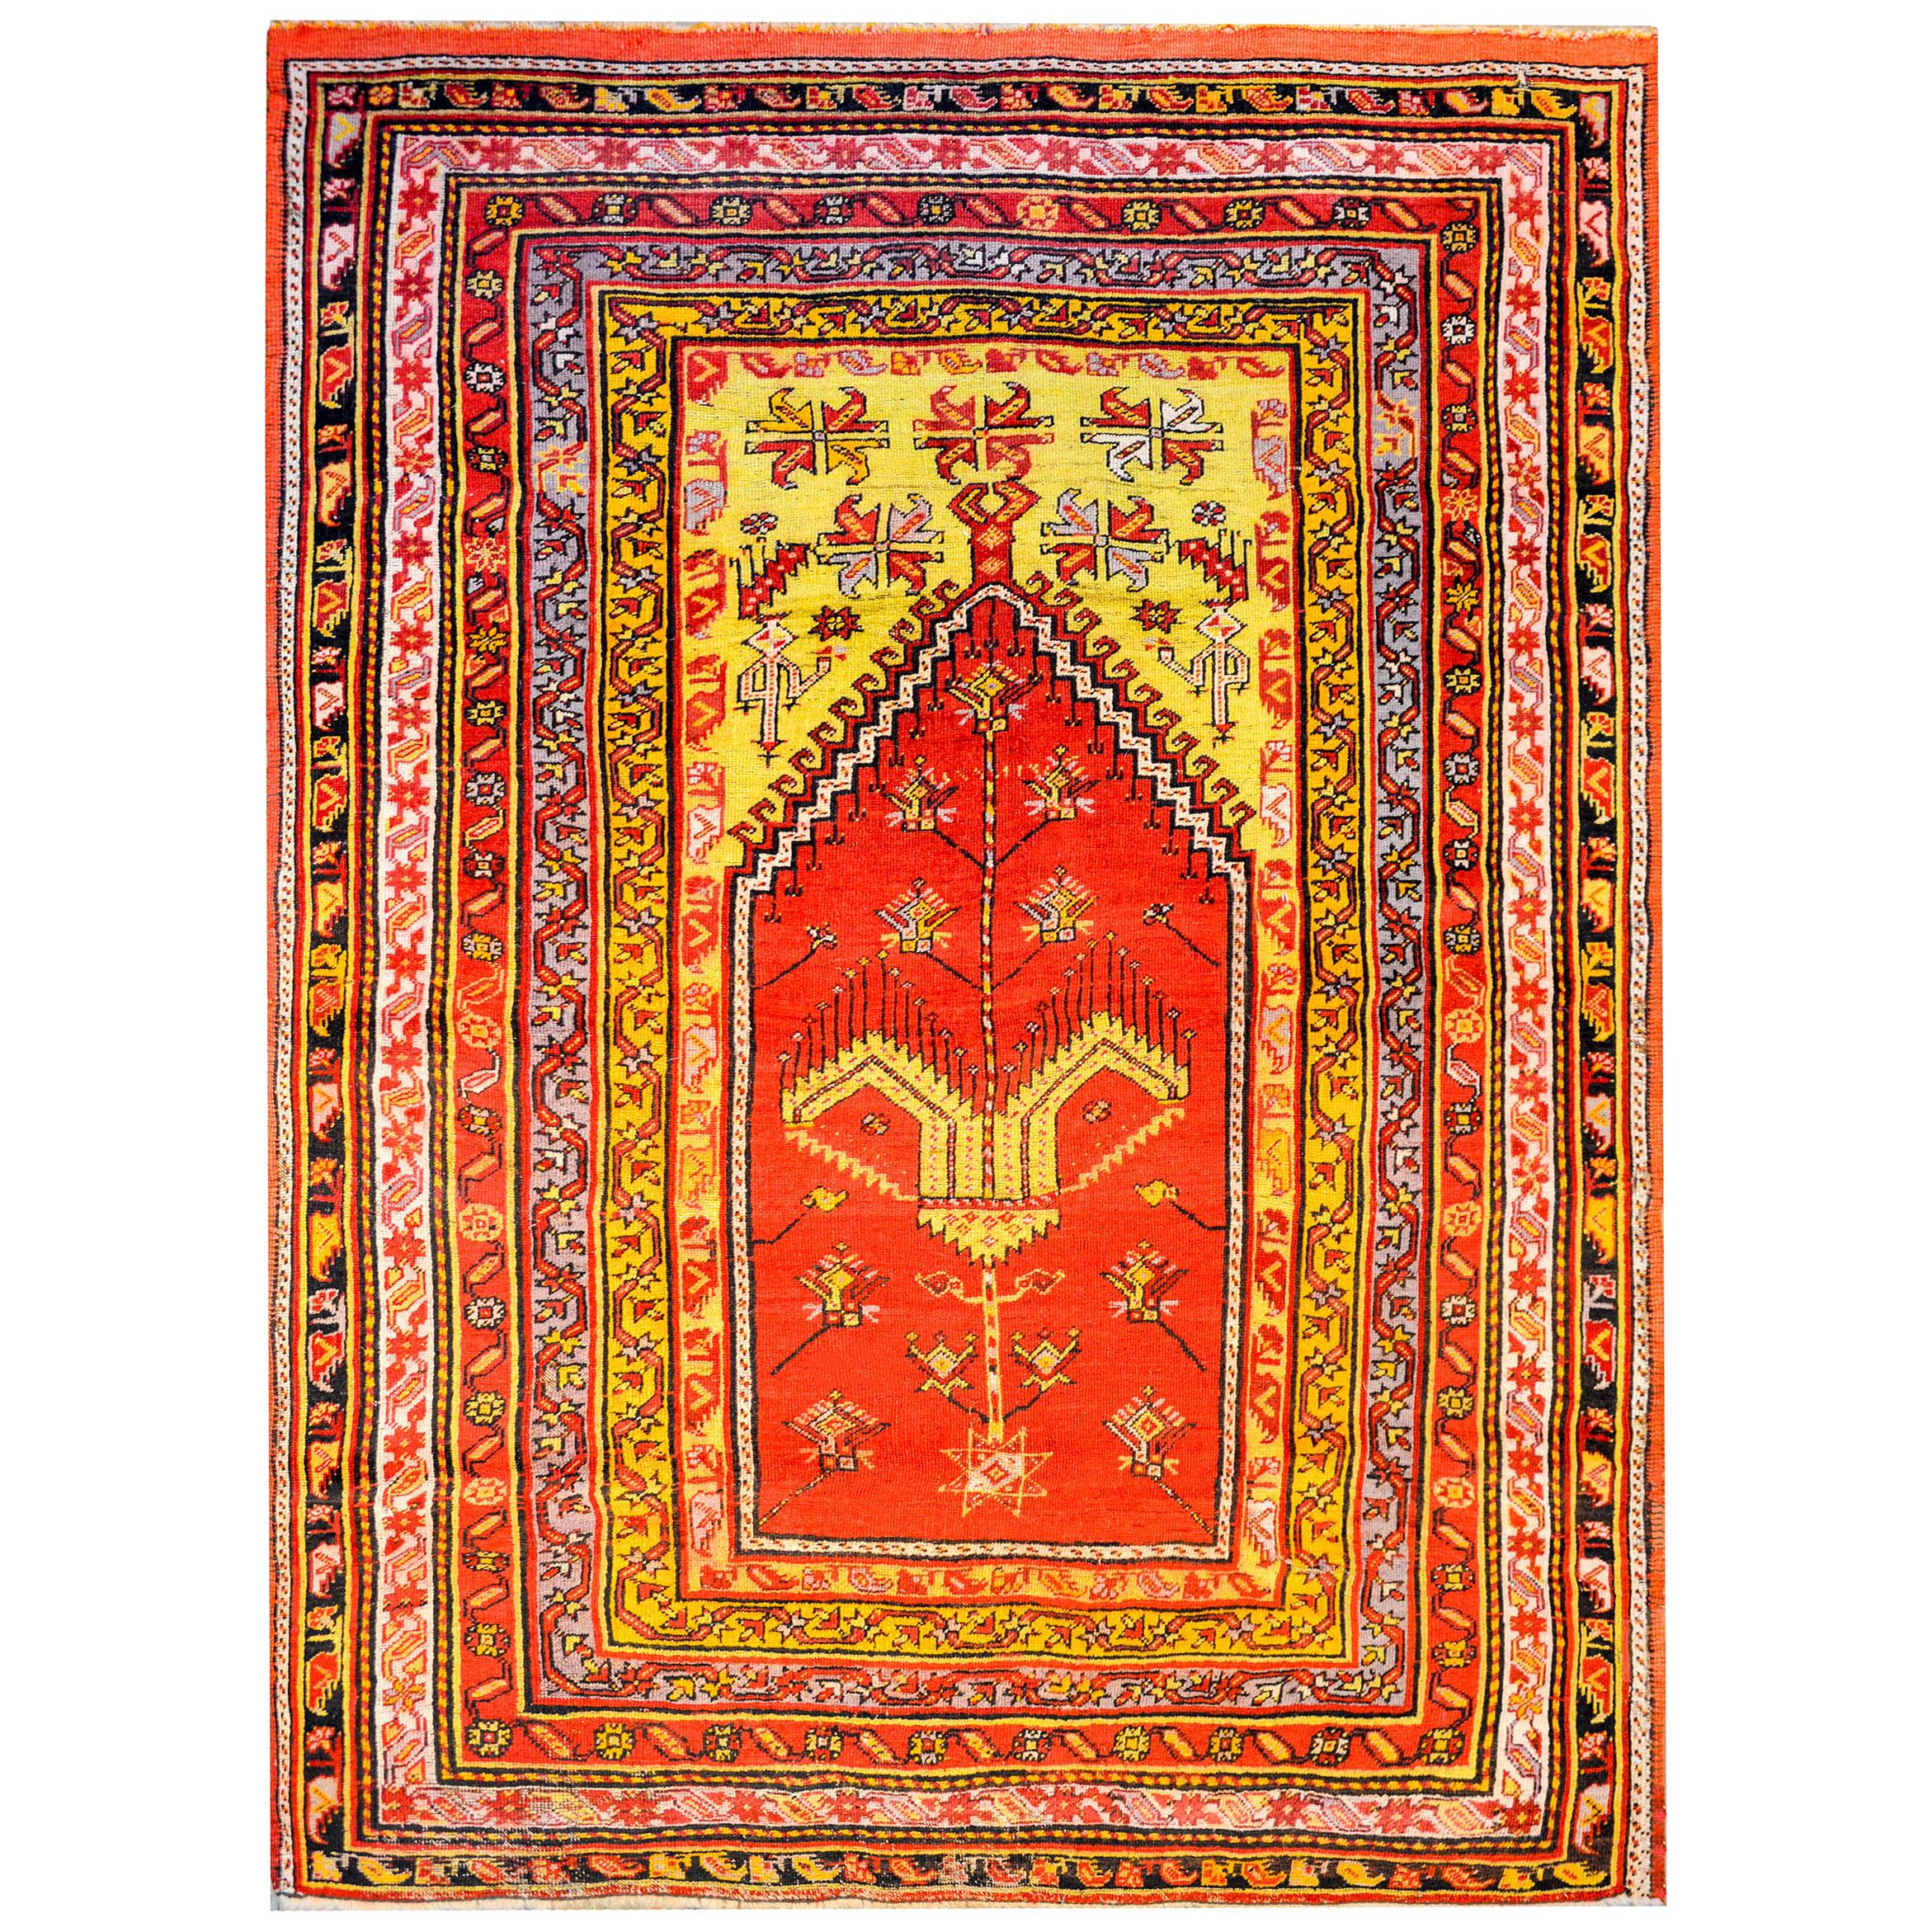 Merveilleux tapis de prière turc du début du 20e siècle